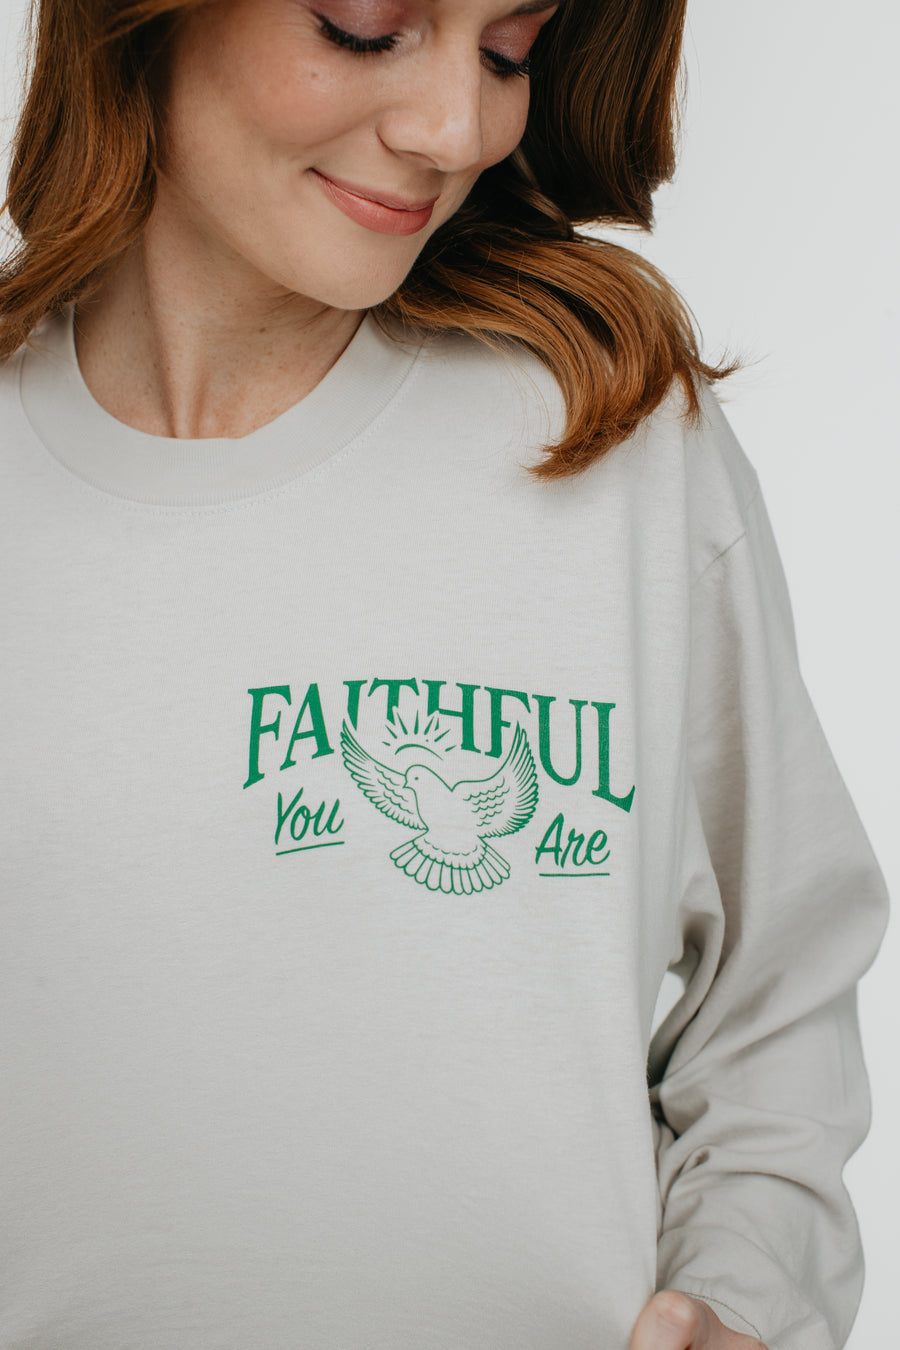 Faithful (You Are) Long Sleeve Tee